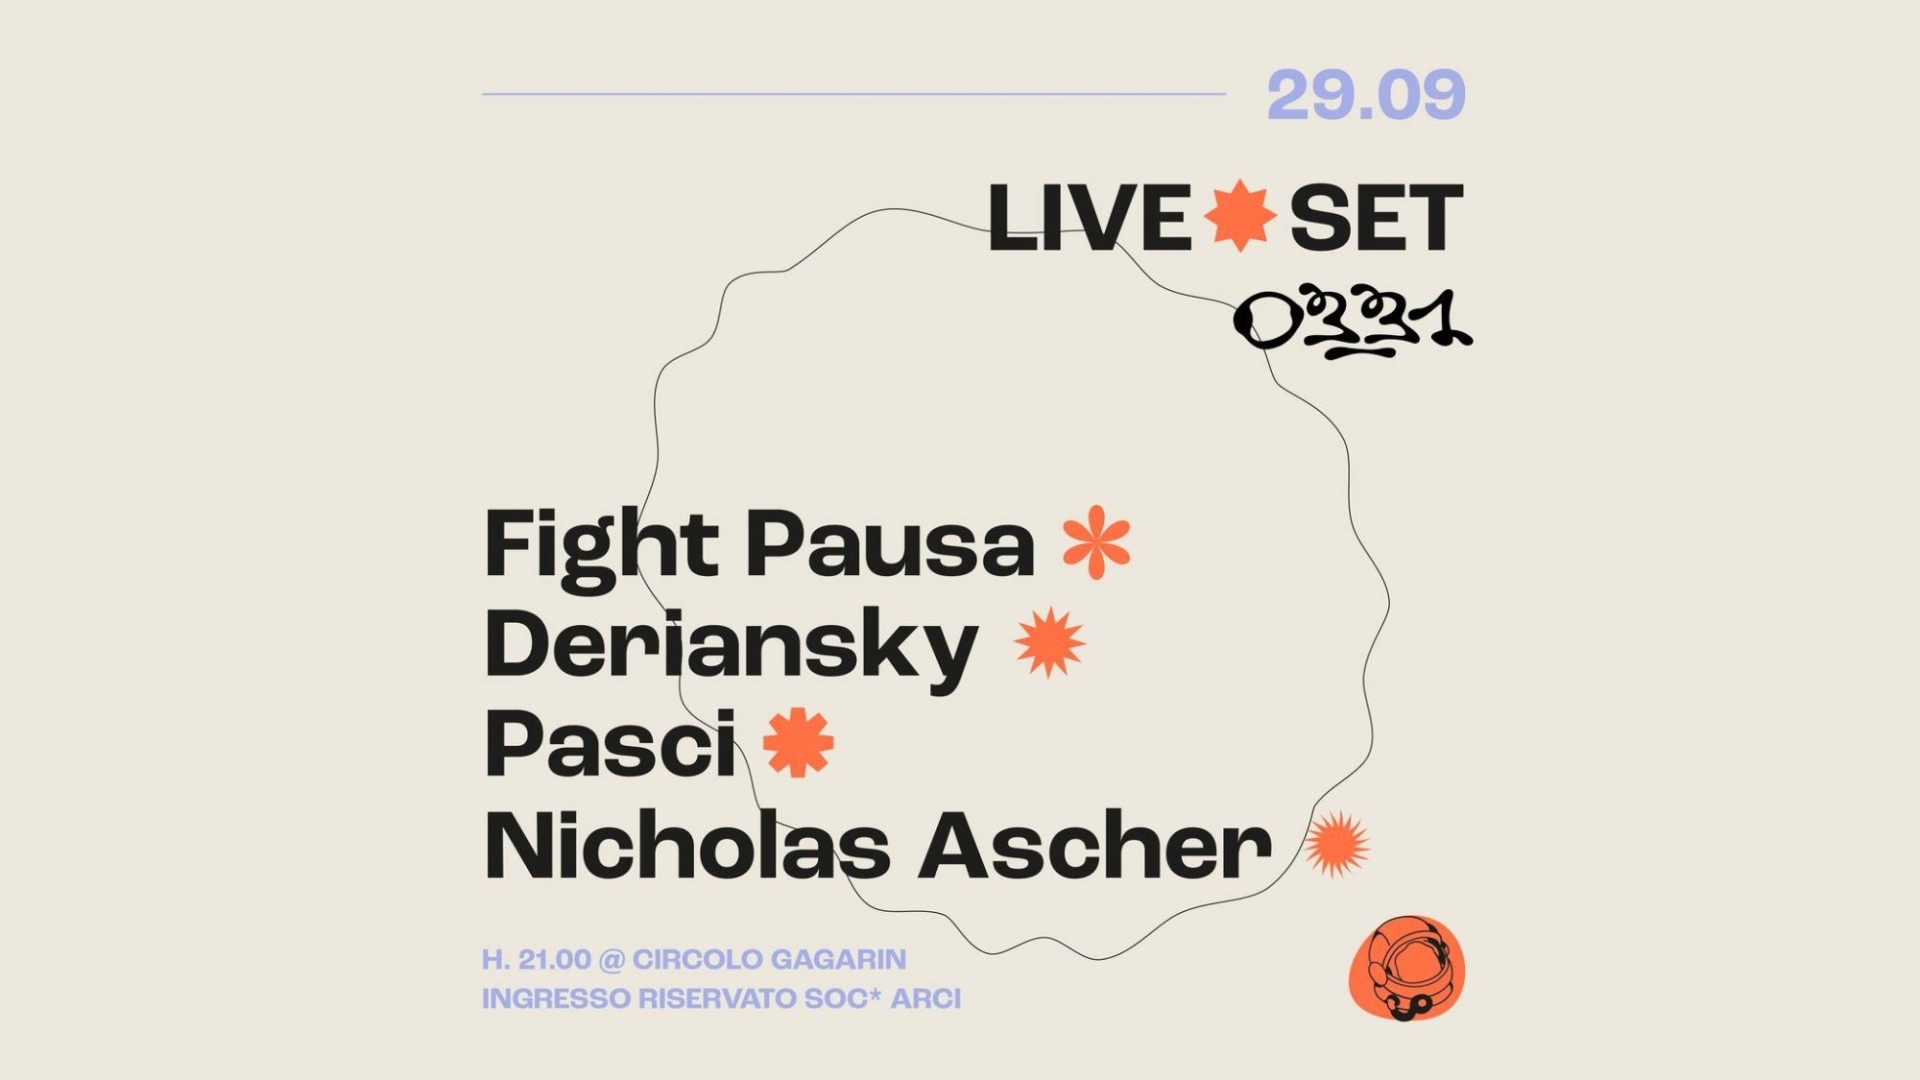 Fight Pausa + Deriansky - Dj-sets